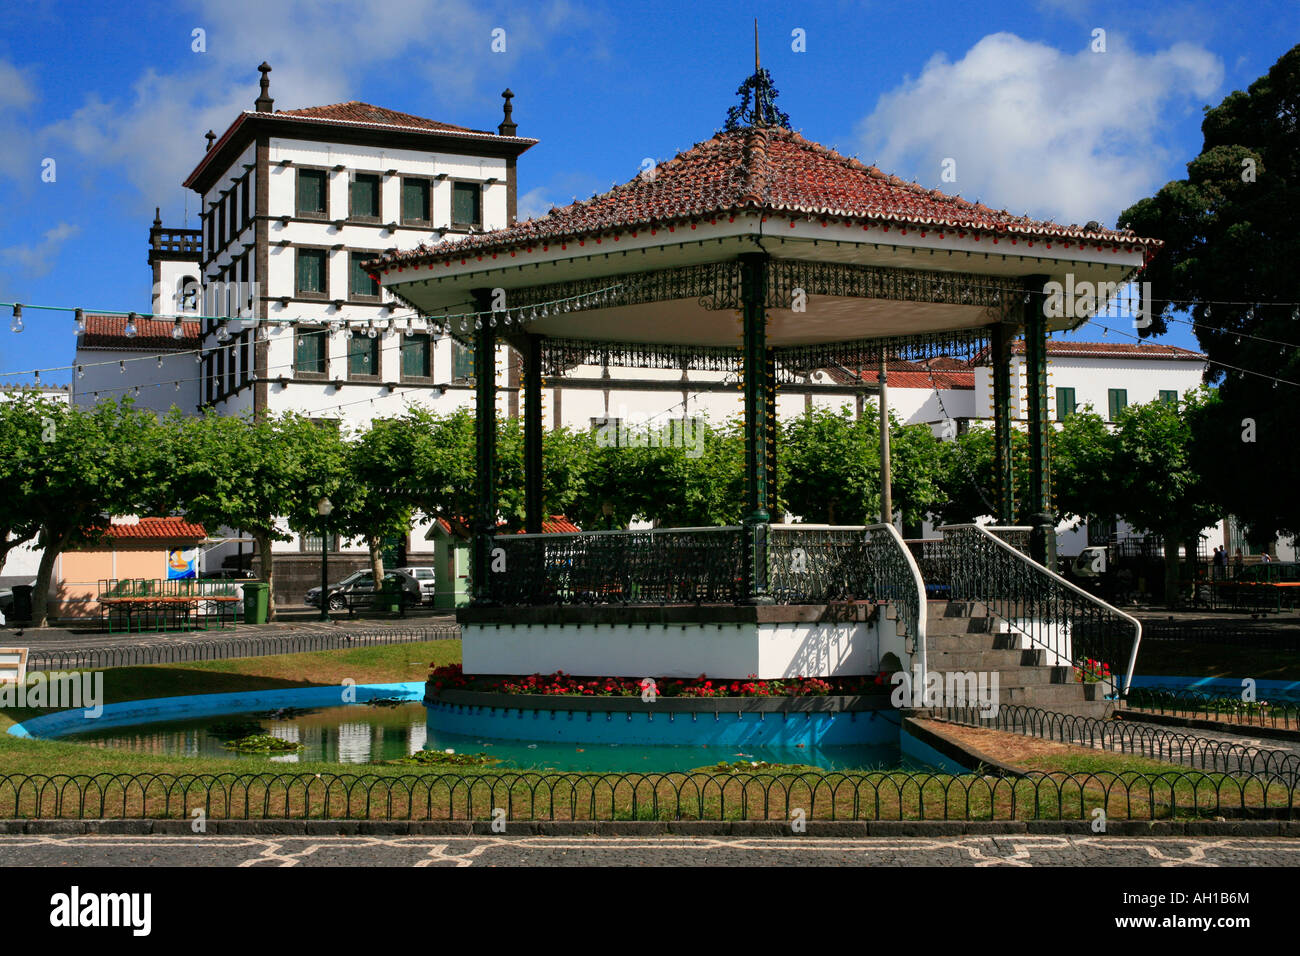 Der Convento da Esperança und der Musikpavillon im Zentrum von Ponta Delgada Azoren Inseln Portugal Stockfoto